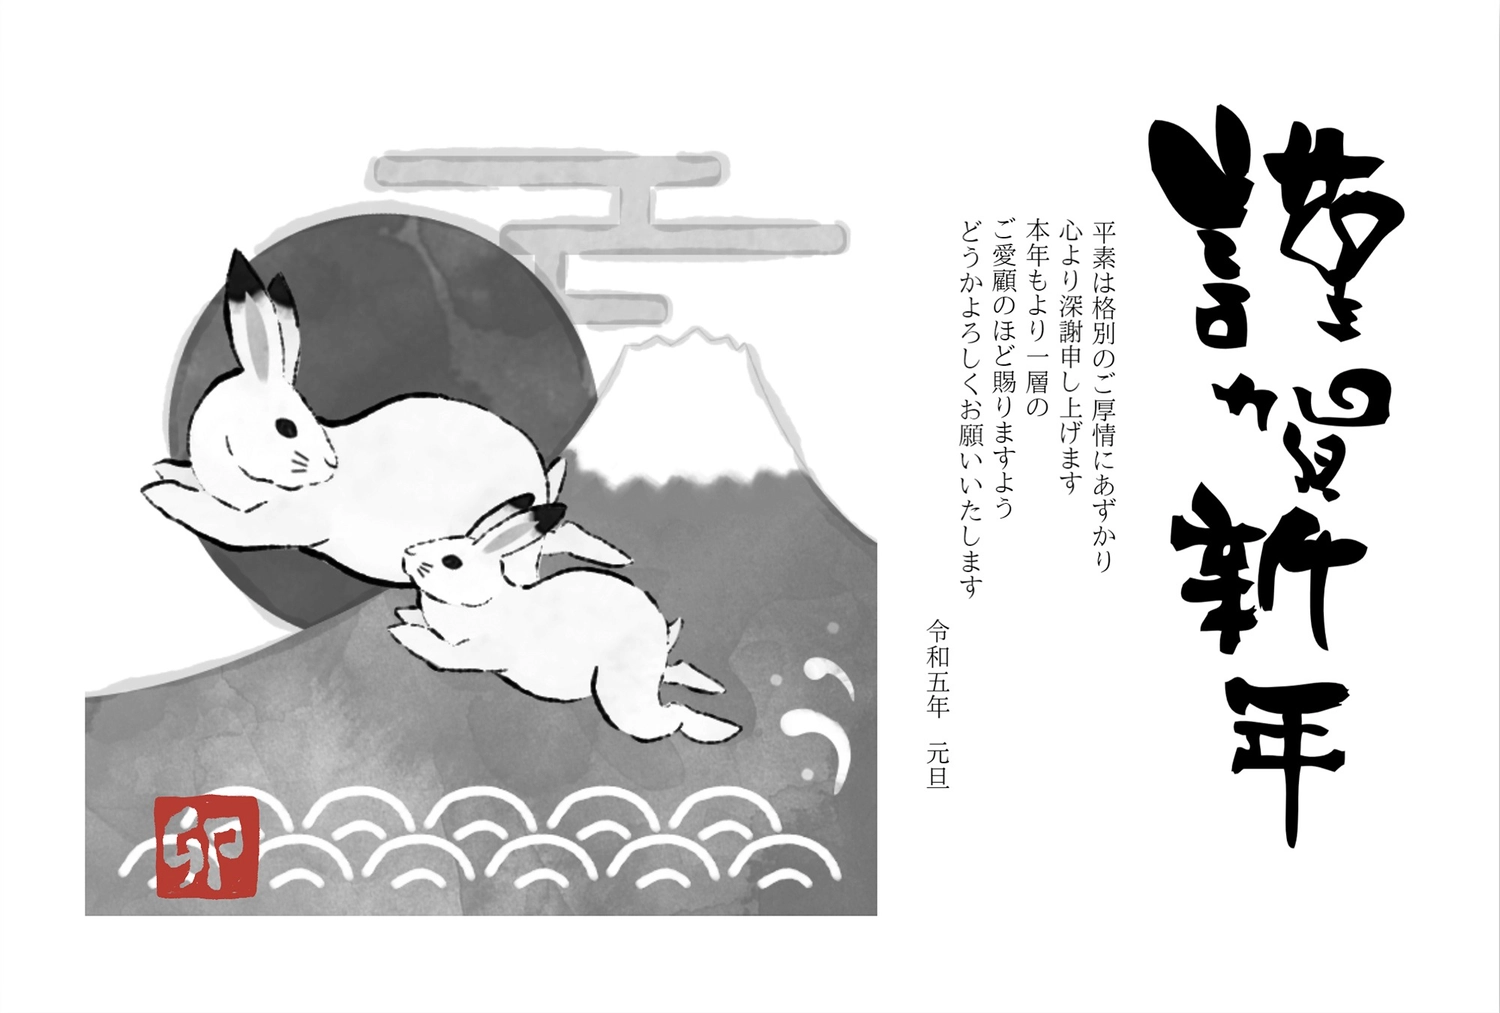 年賀状　水墨画風うさぎと富士山と初日の出, seal (used for signature), ink painting style, sign and seal, New Year Card template